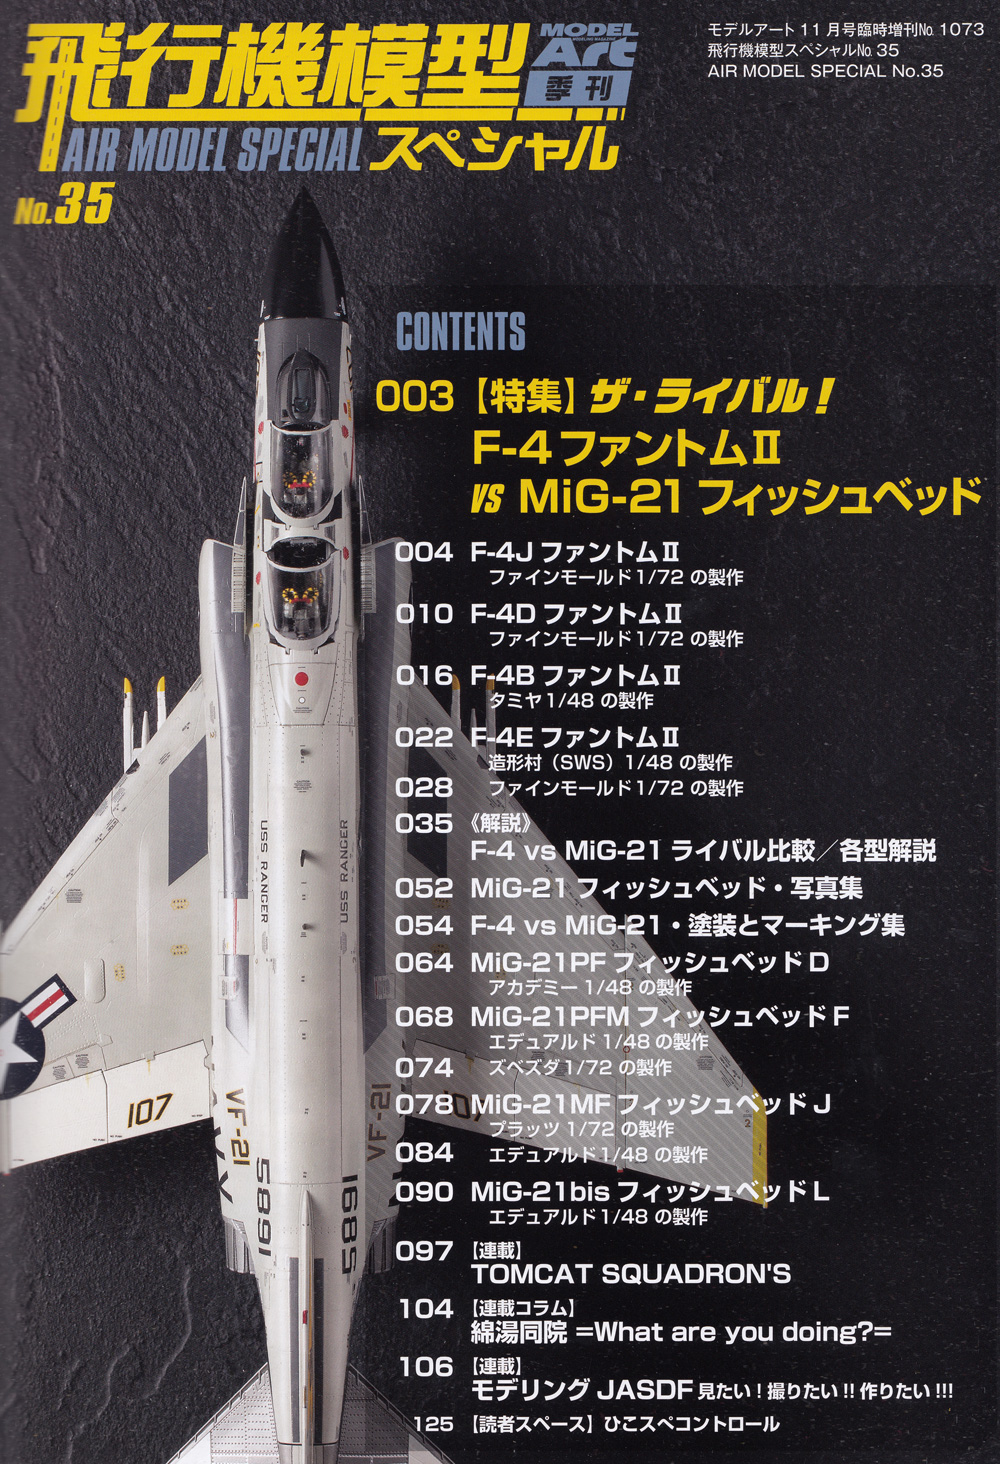 飛行機模型スペシャル No.35 ザ・ライバル F-4 ファントム 2 vs MiG-21 フィッシュベッド 本 (モデルアート 飛行機模型スペシャル No.035) 商品画像_1